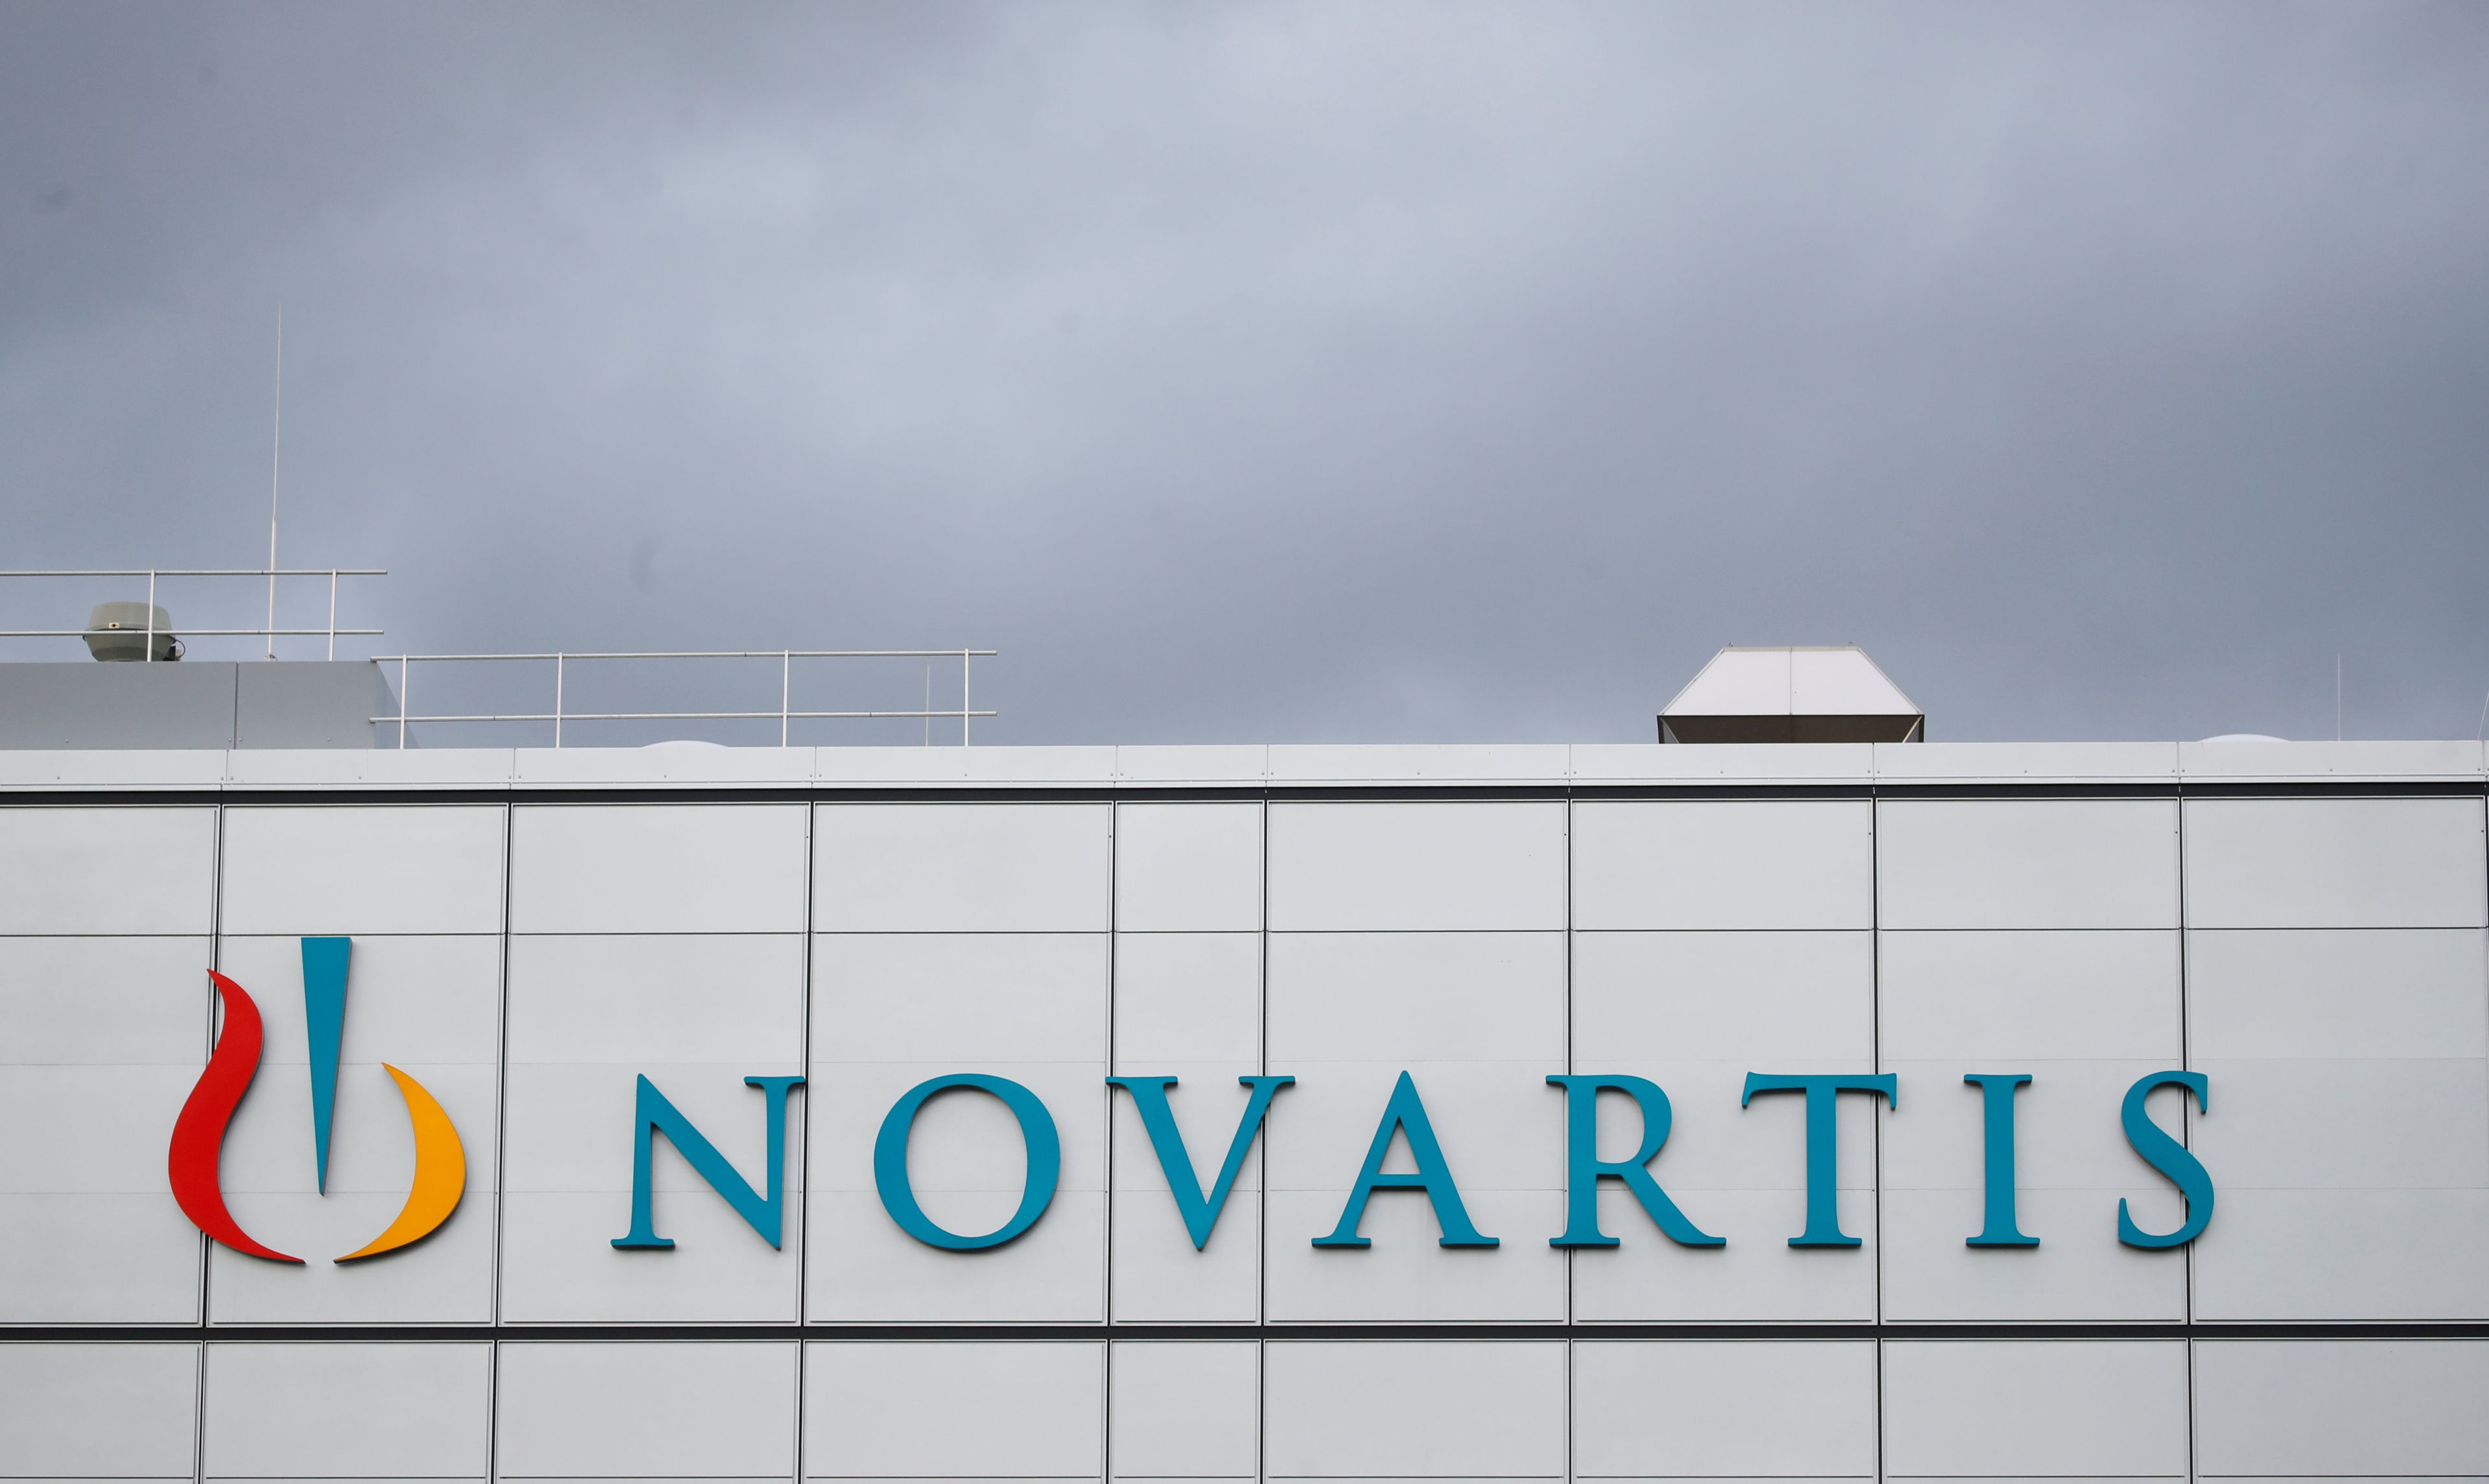 El logo de Novartis en la fachada de un edificio